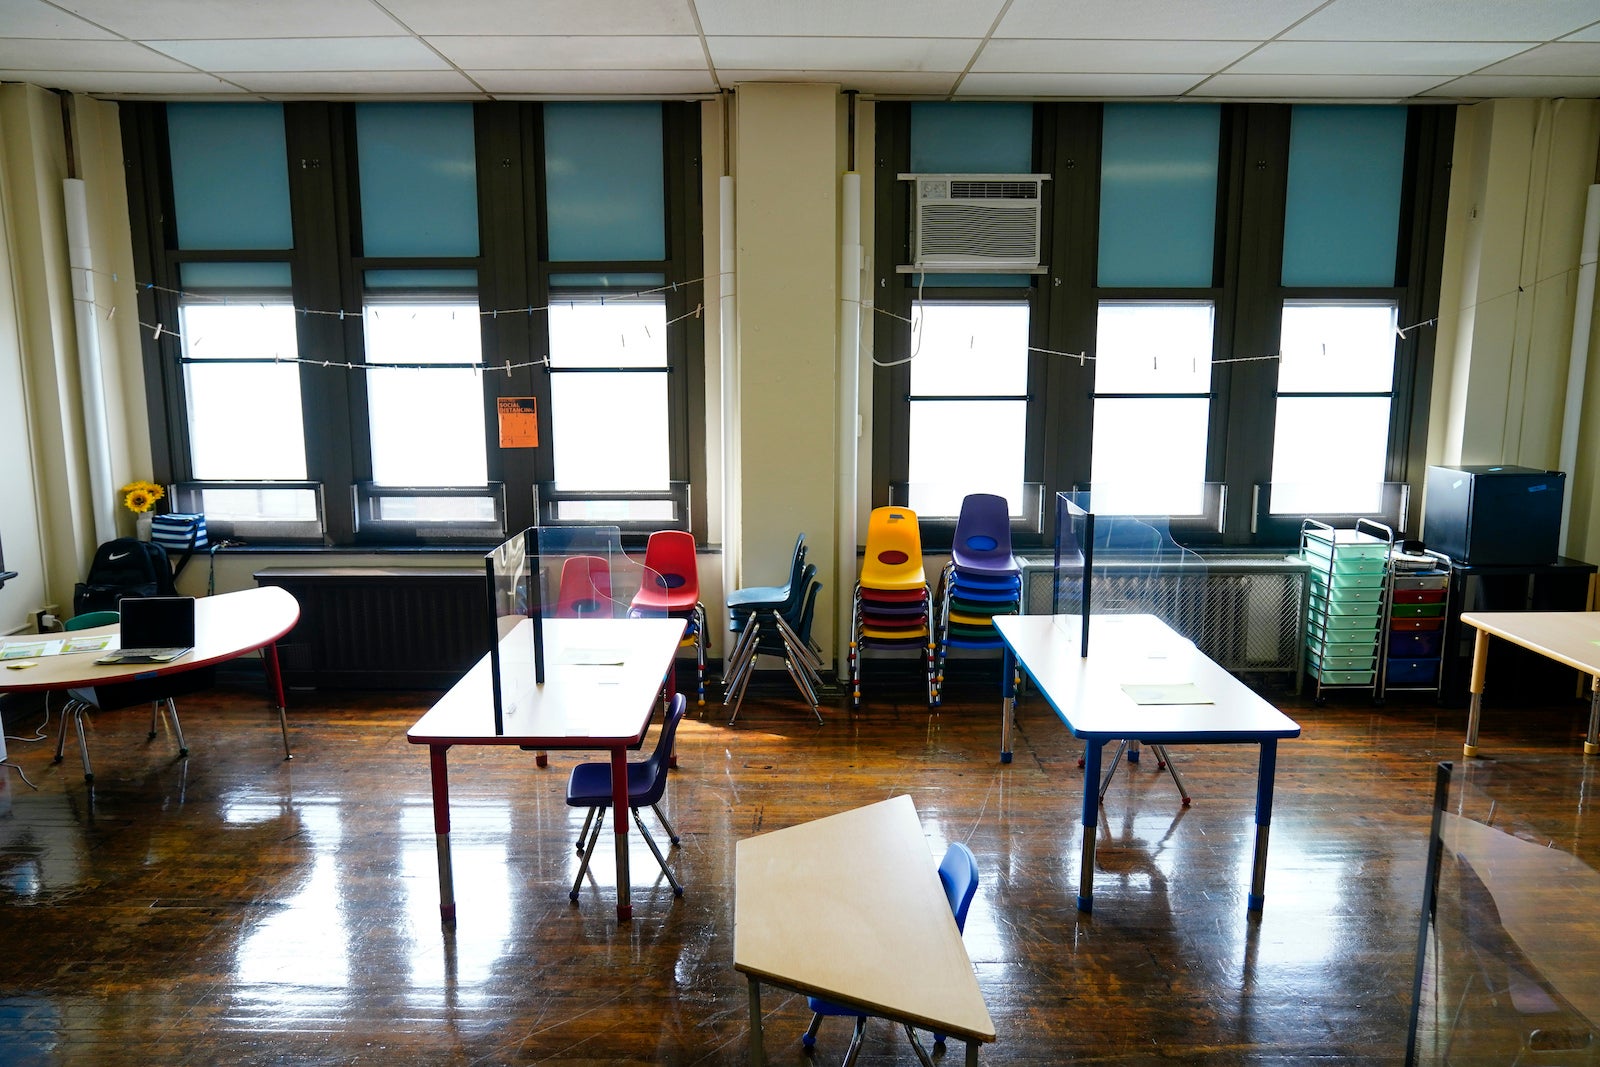 More Philadelphia schools could soon go 'phone free' - 6abc Philadelphia